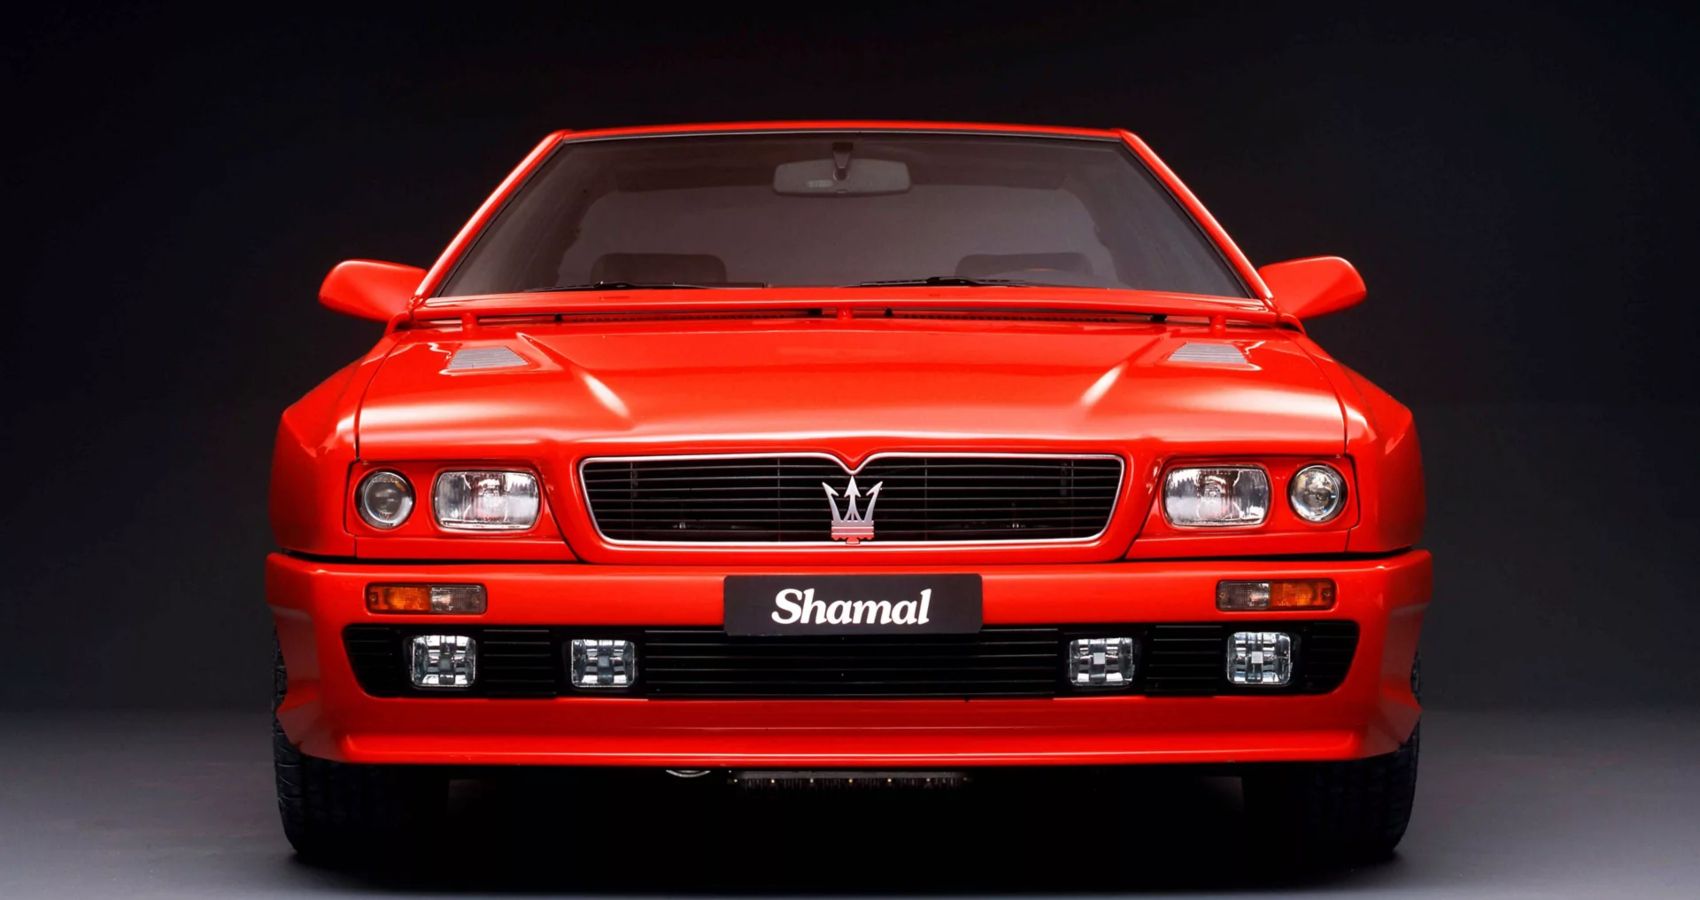 Maserati Shamal Front Image